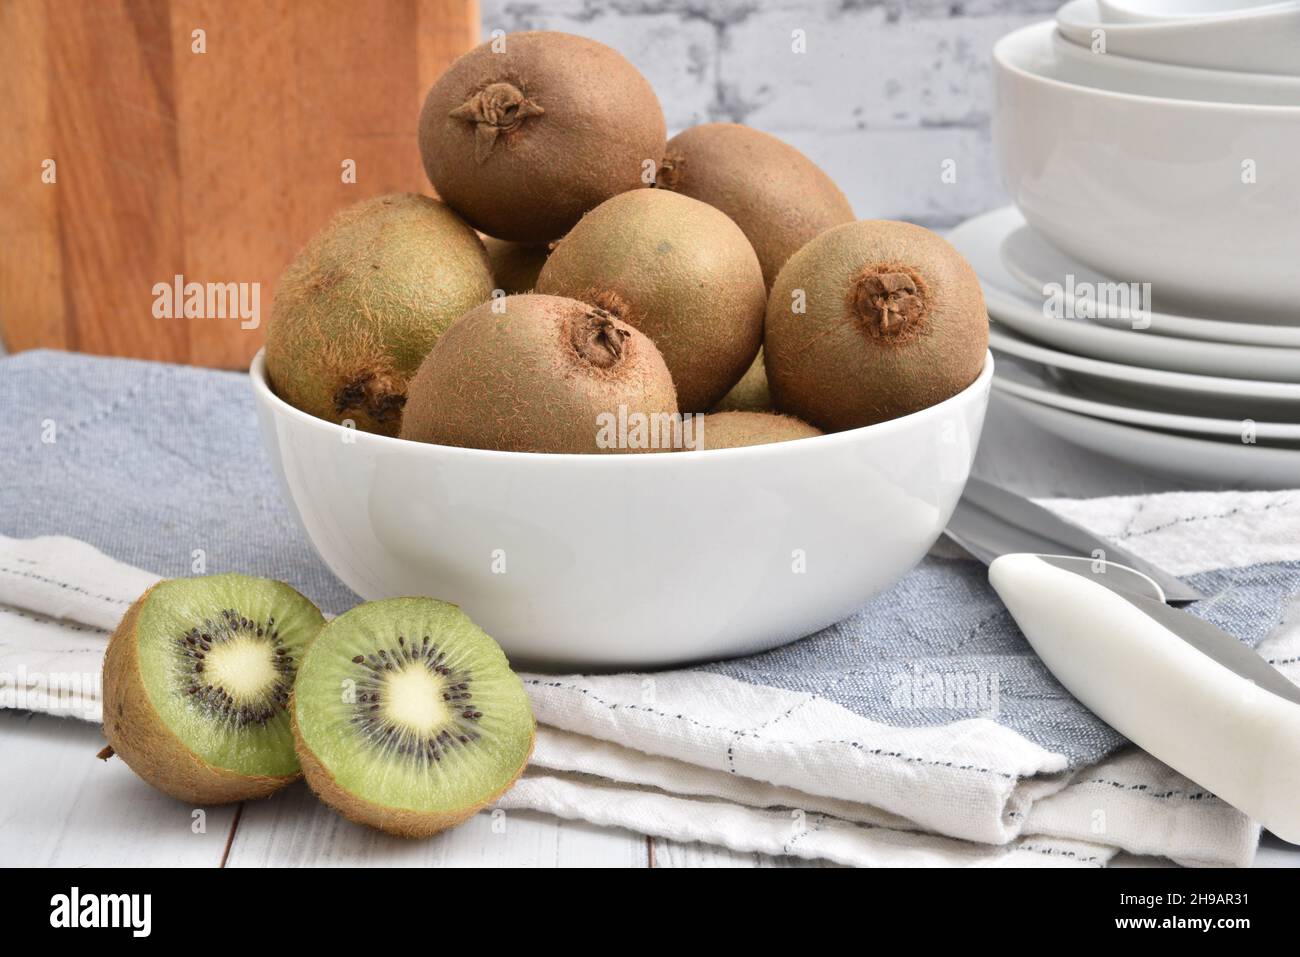 A bowl of fresh kiwi on a white wooden kitchen countertop Stock Photo